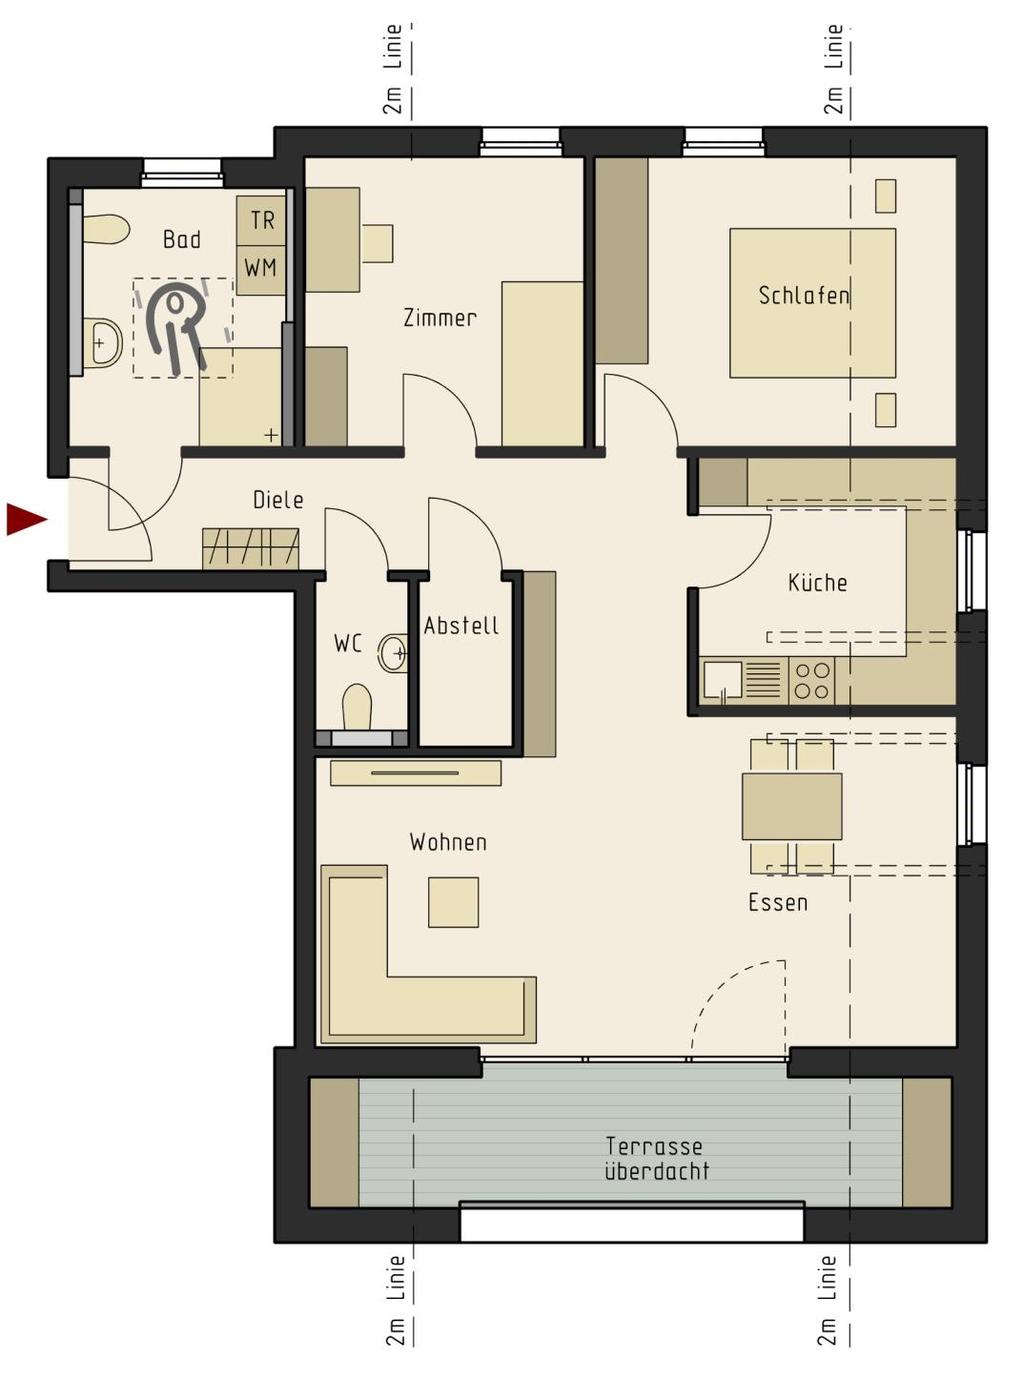 3 Zimmer Wohnfläche 90,50 m² Kellerraum 119 6,50 m² Wohnen/Essen 25,86 m² Küche 8,14 m² Schlafen 12,11 m² Zimmer